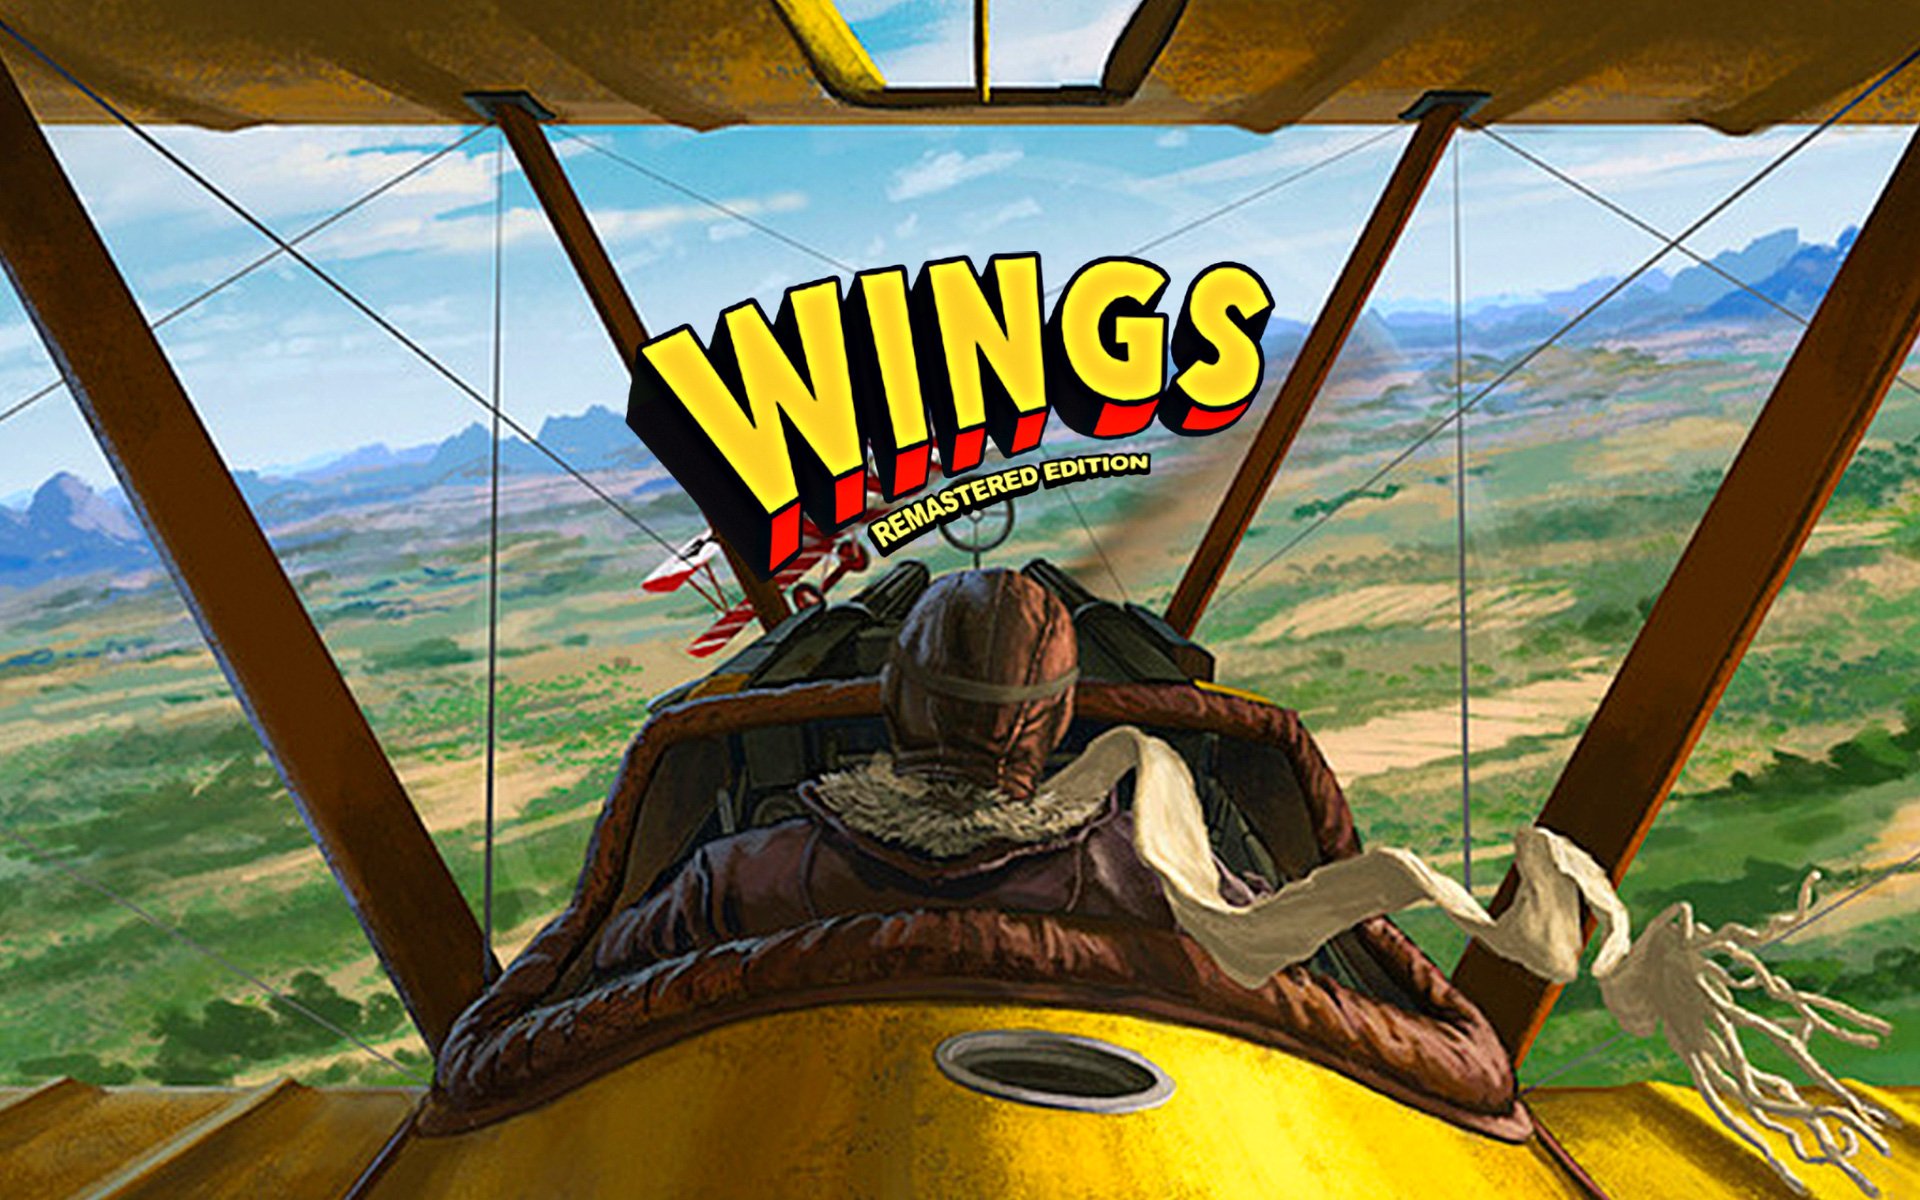 Wingdus - Game Wingdus  Como se cadastrar? Como jogar?